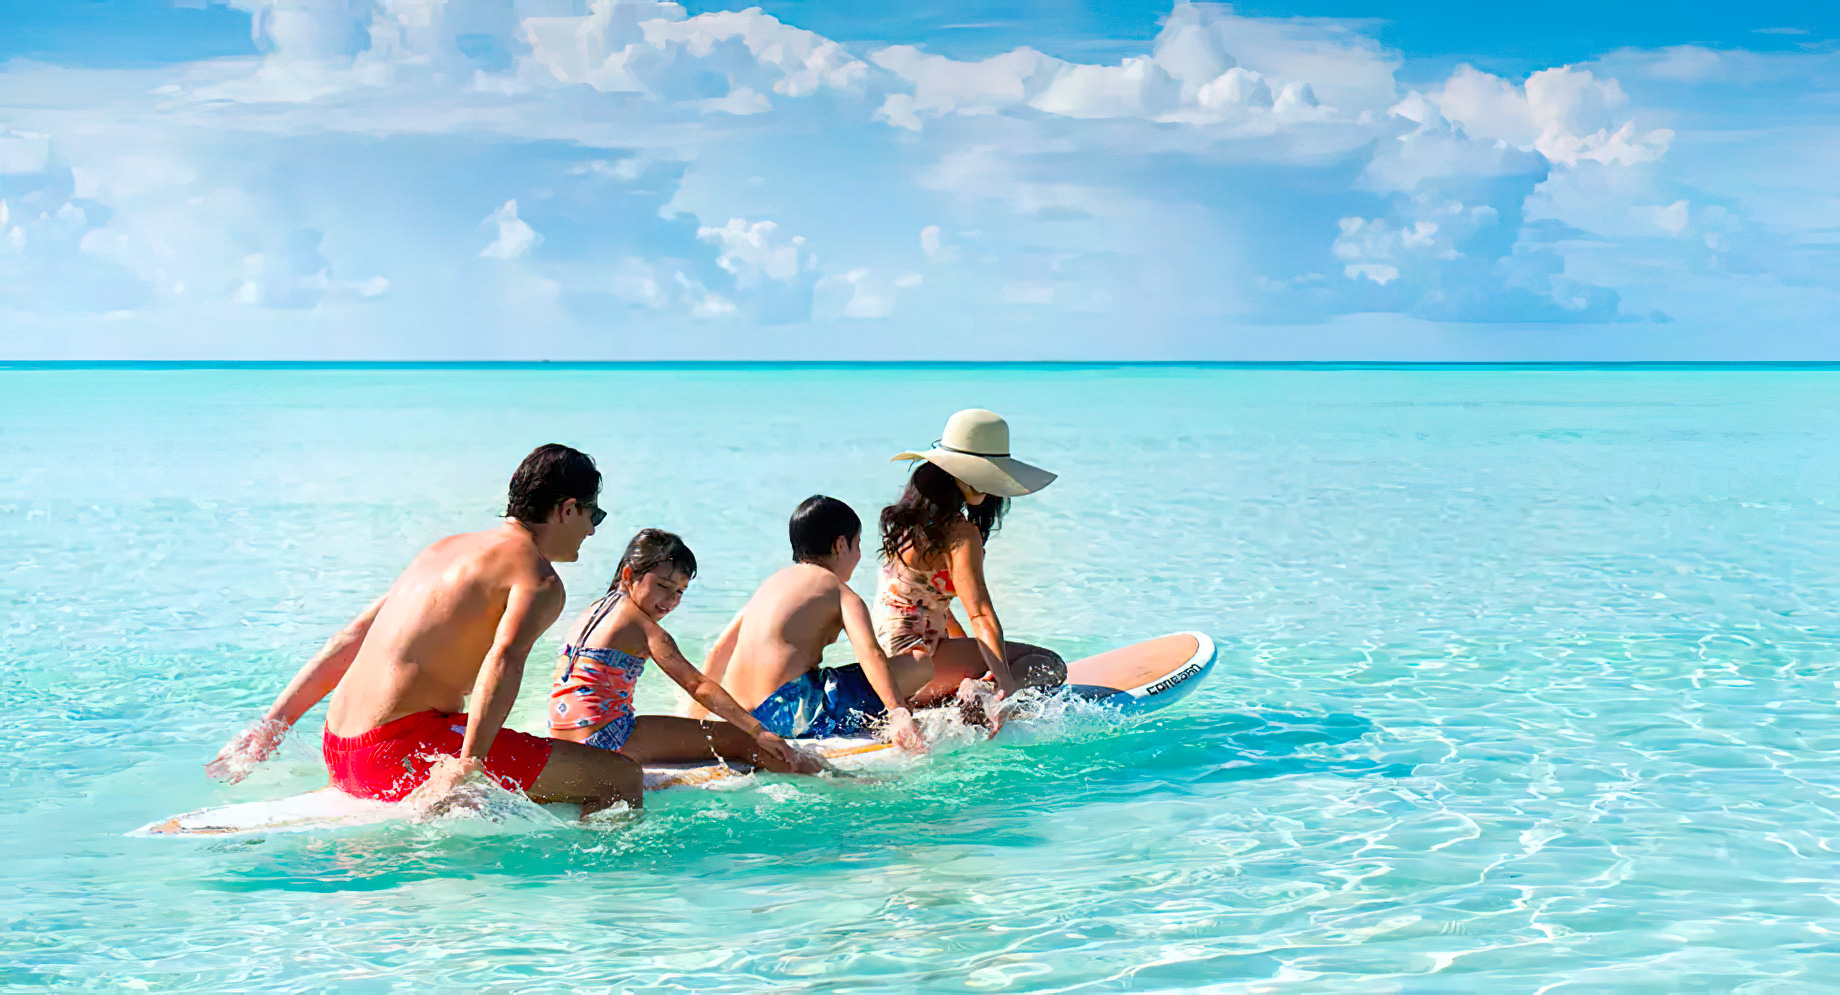 Anantara Thigu Maldives Resort – South Male Atoll, Maldives – Boarding